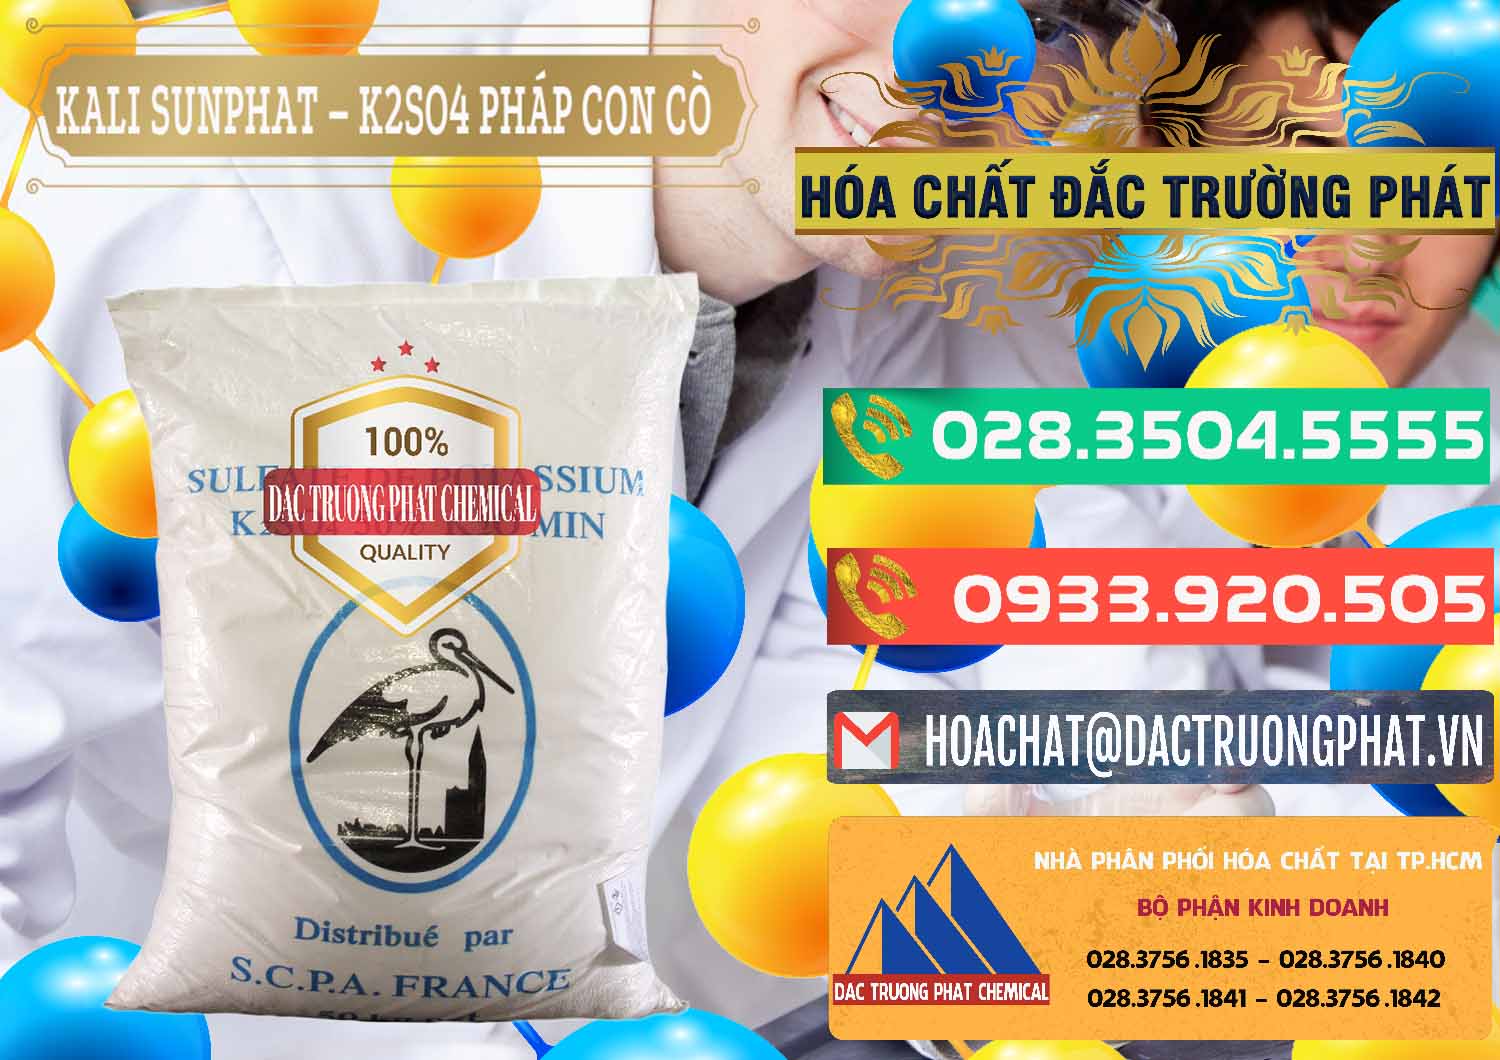 Nơi chuyên bán và cung ứng Kali Sunphat – K2SO4 Con Cò Pháp France - 0083 - Cty phân phối _ cung cấp hóa chất tại TP.HCM - congtyhoachat.com.vn